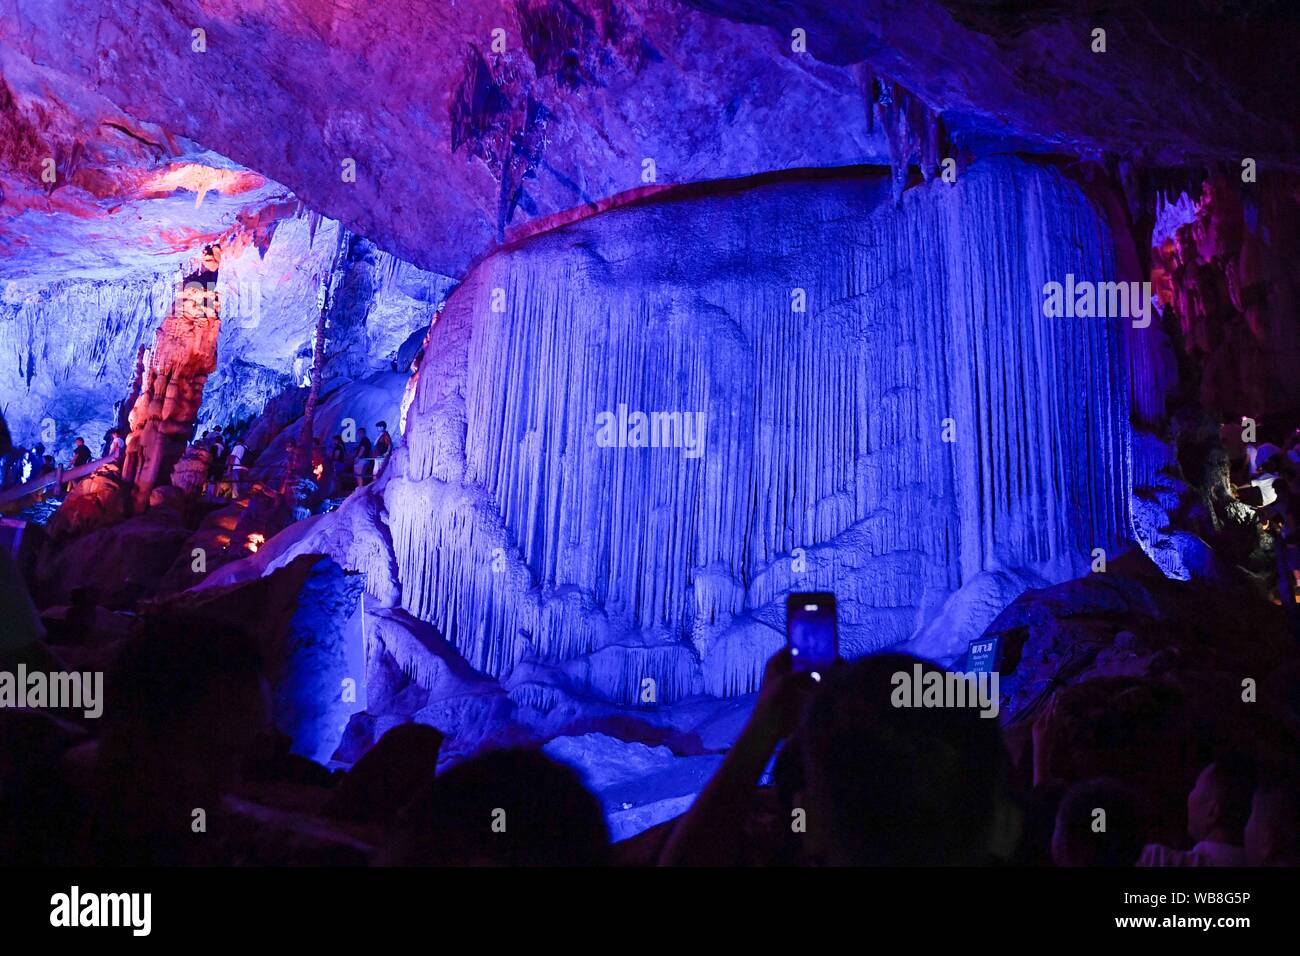 (190825) -- TONGLU, Aug. 25, 2019 (Xinhua) -- Tourists visit the Yaolin karst cave in Tonglu County, east China's Zhejiang Province, Aug. 25, 2019. (Xinhua/Huang Zongzhi) Stock Photo